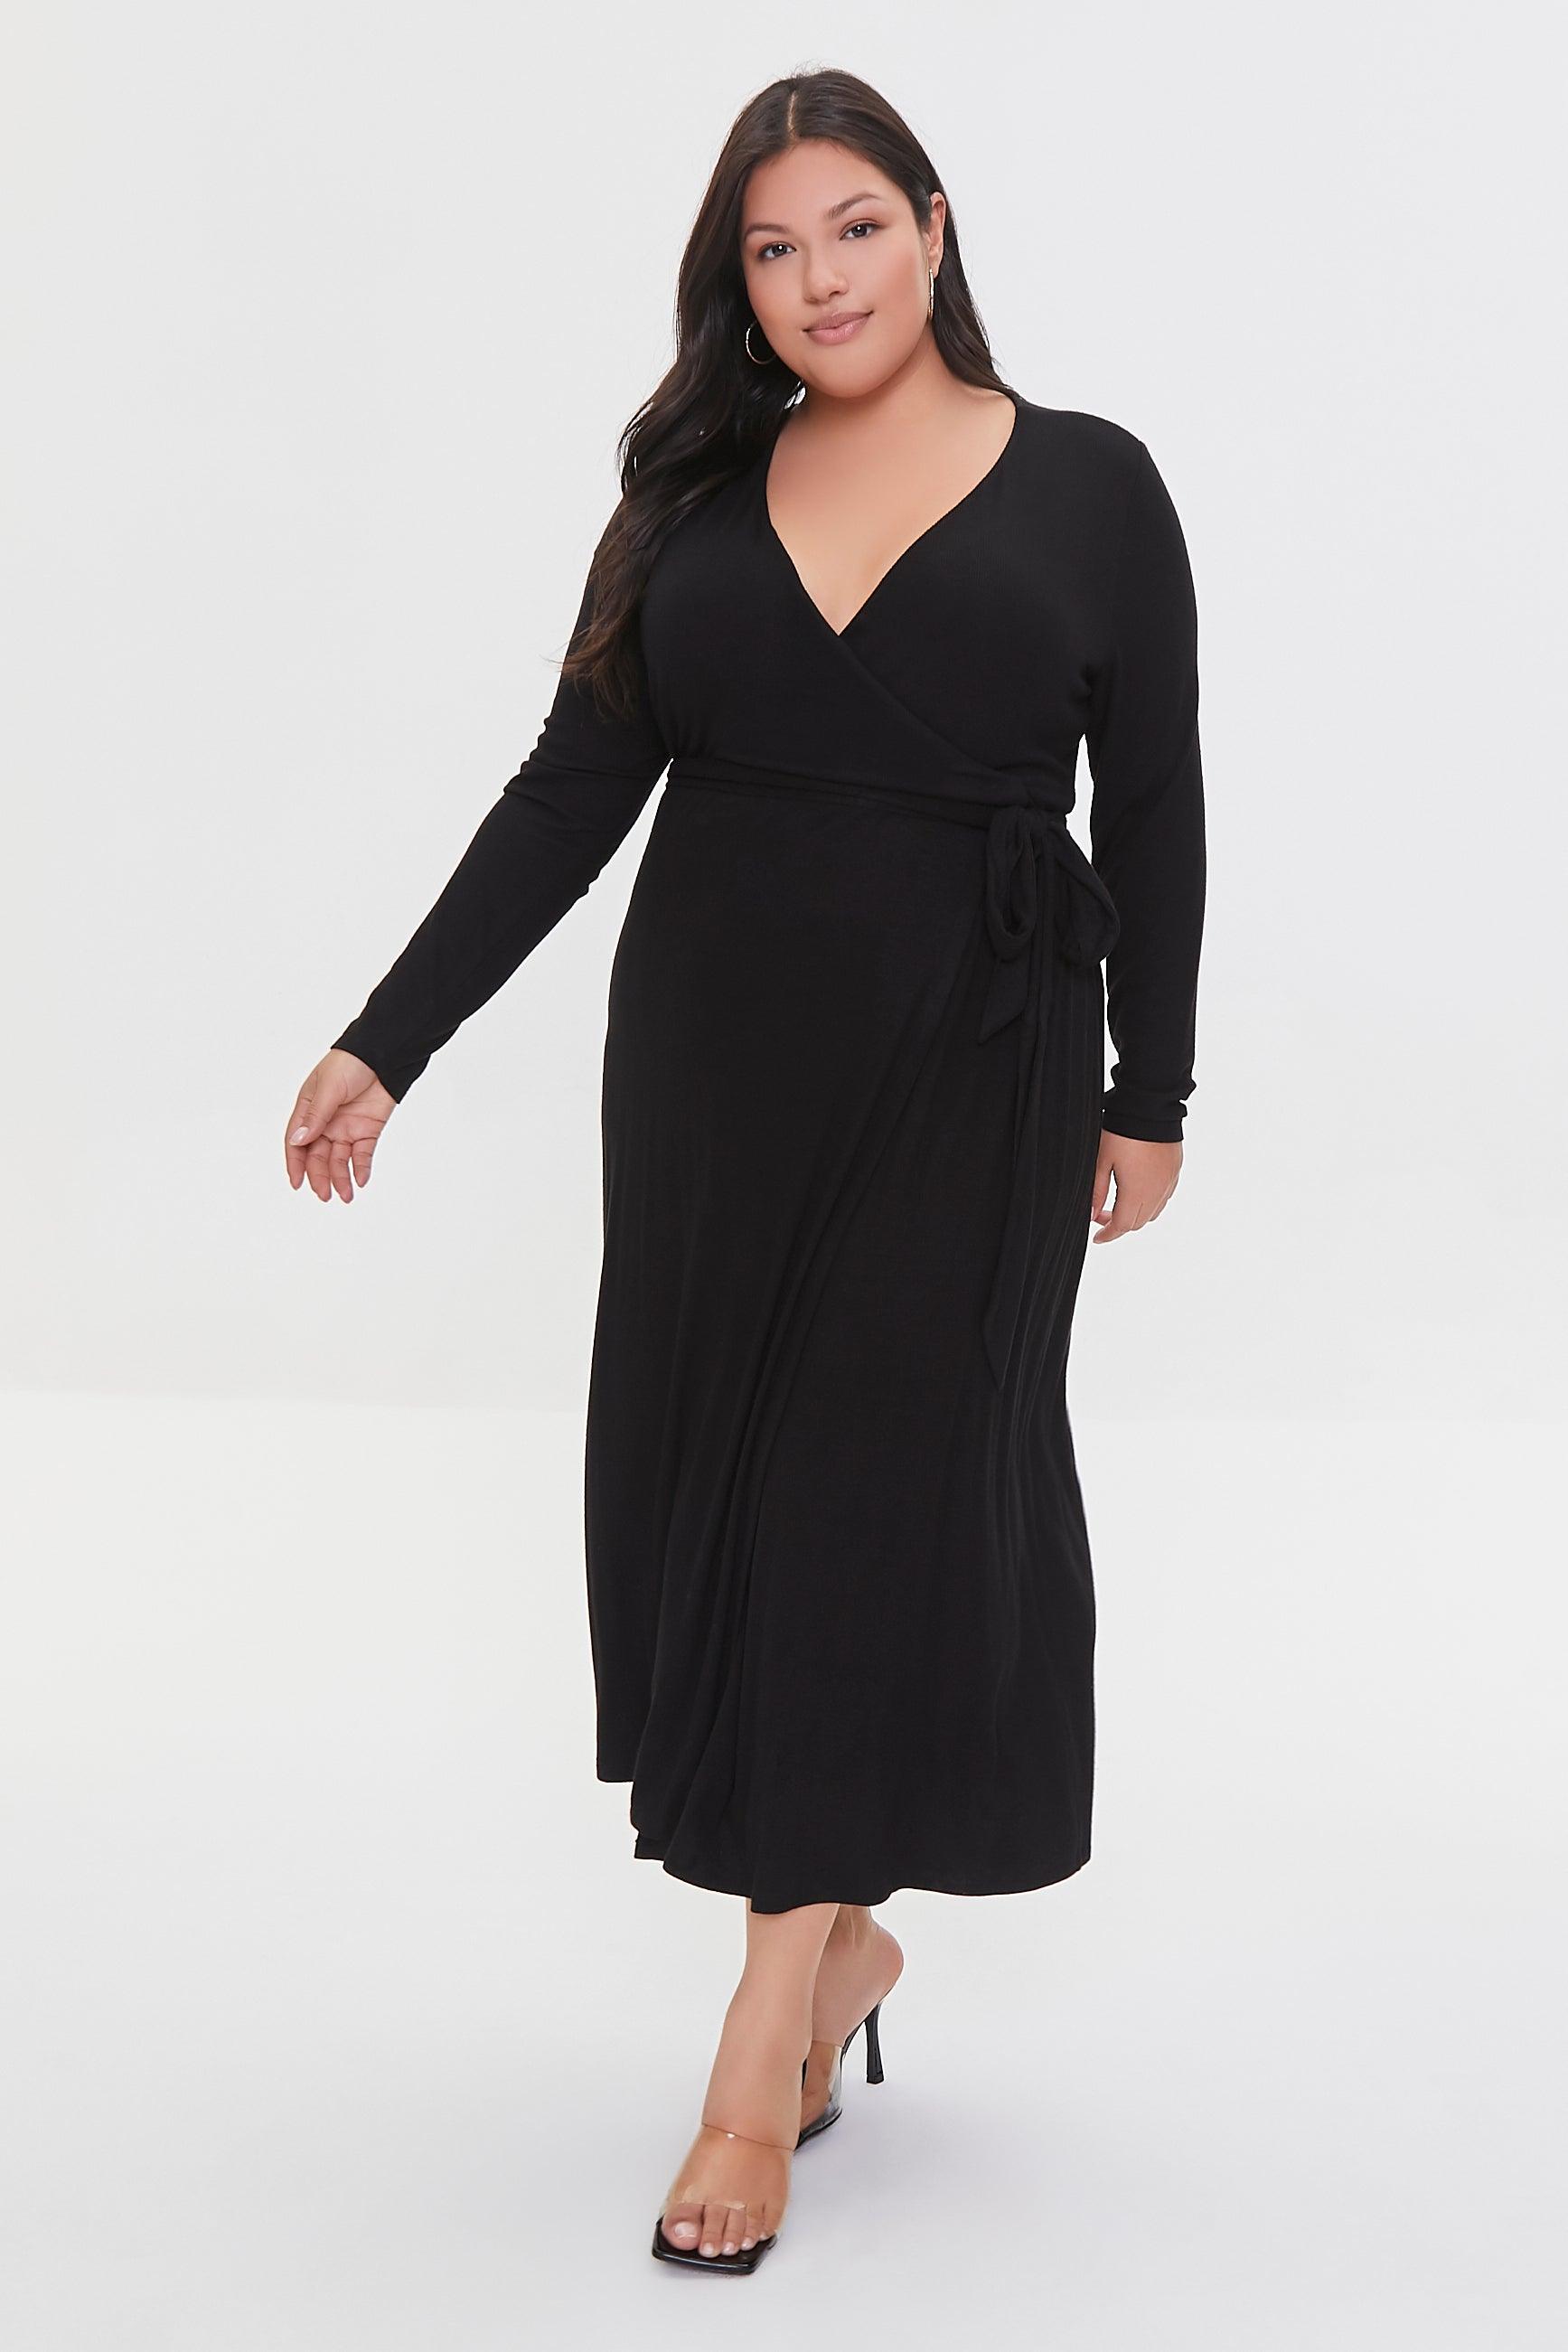 Black Plus Size Maxi Wrap Dress 